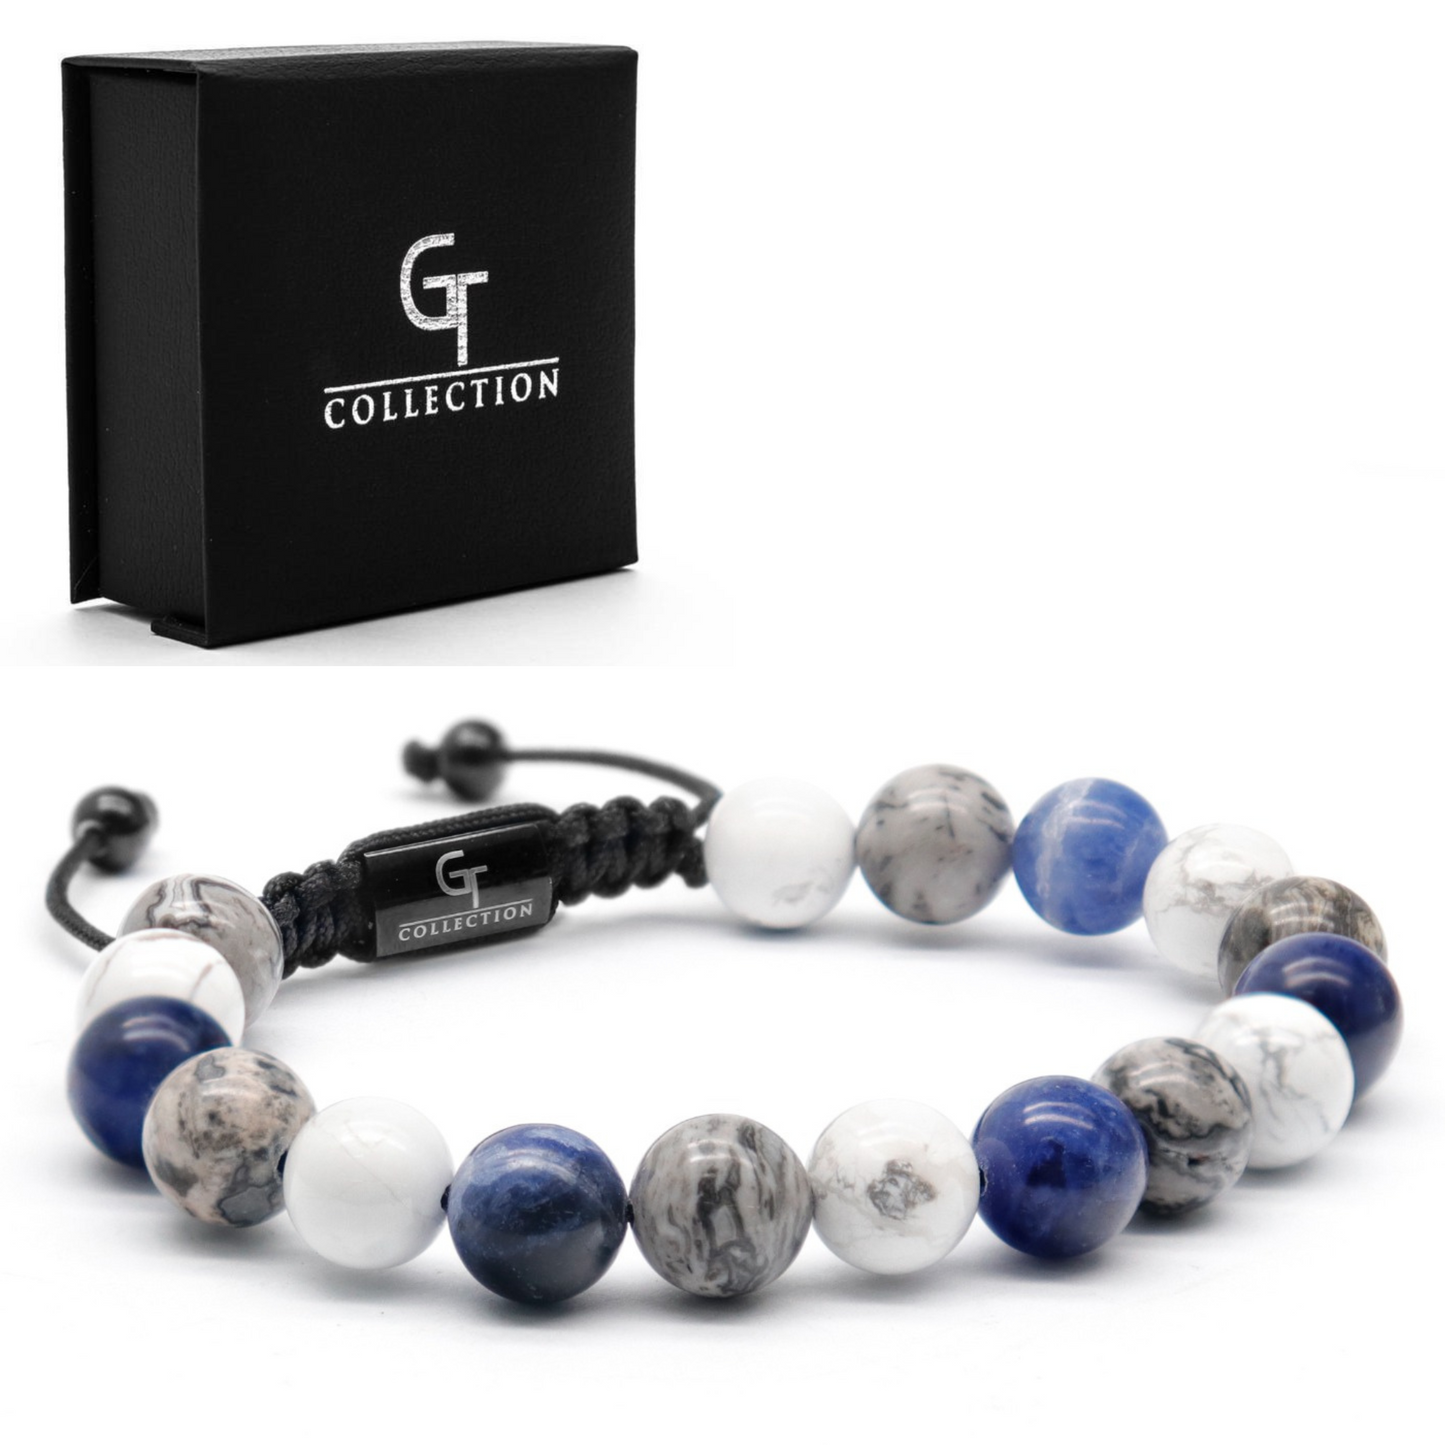 Bracelet perlé sodalite, howlite et jaspe pour hommes - Taille unique